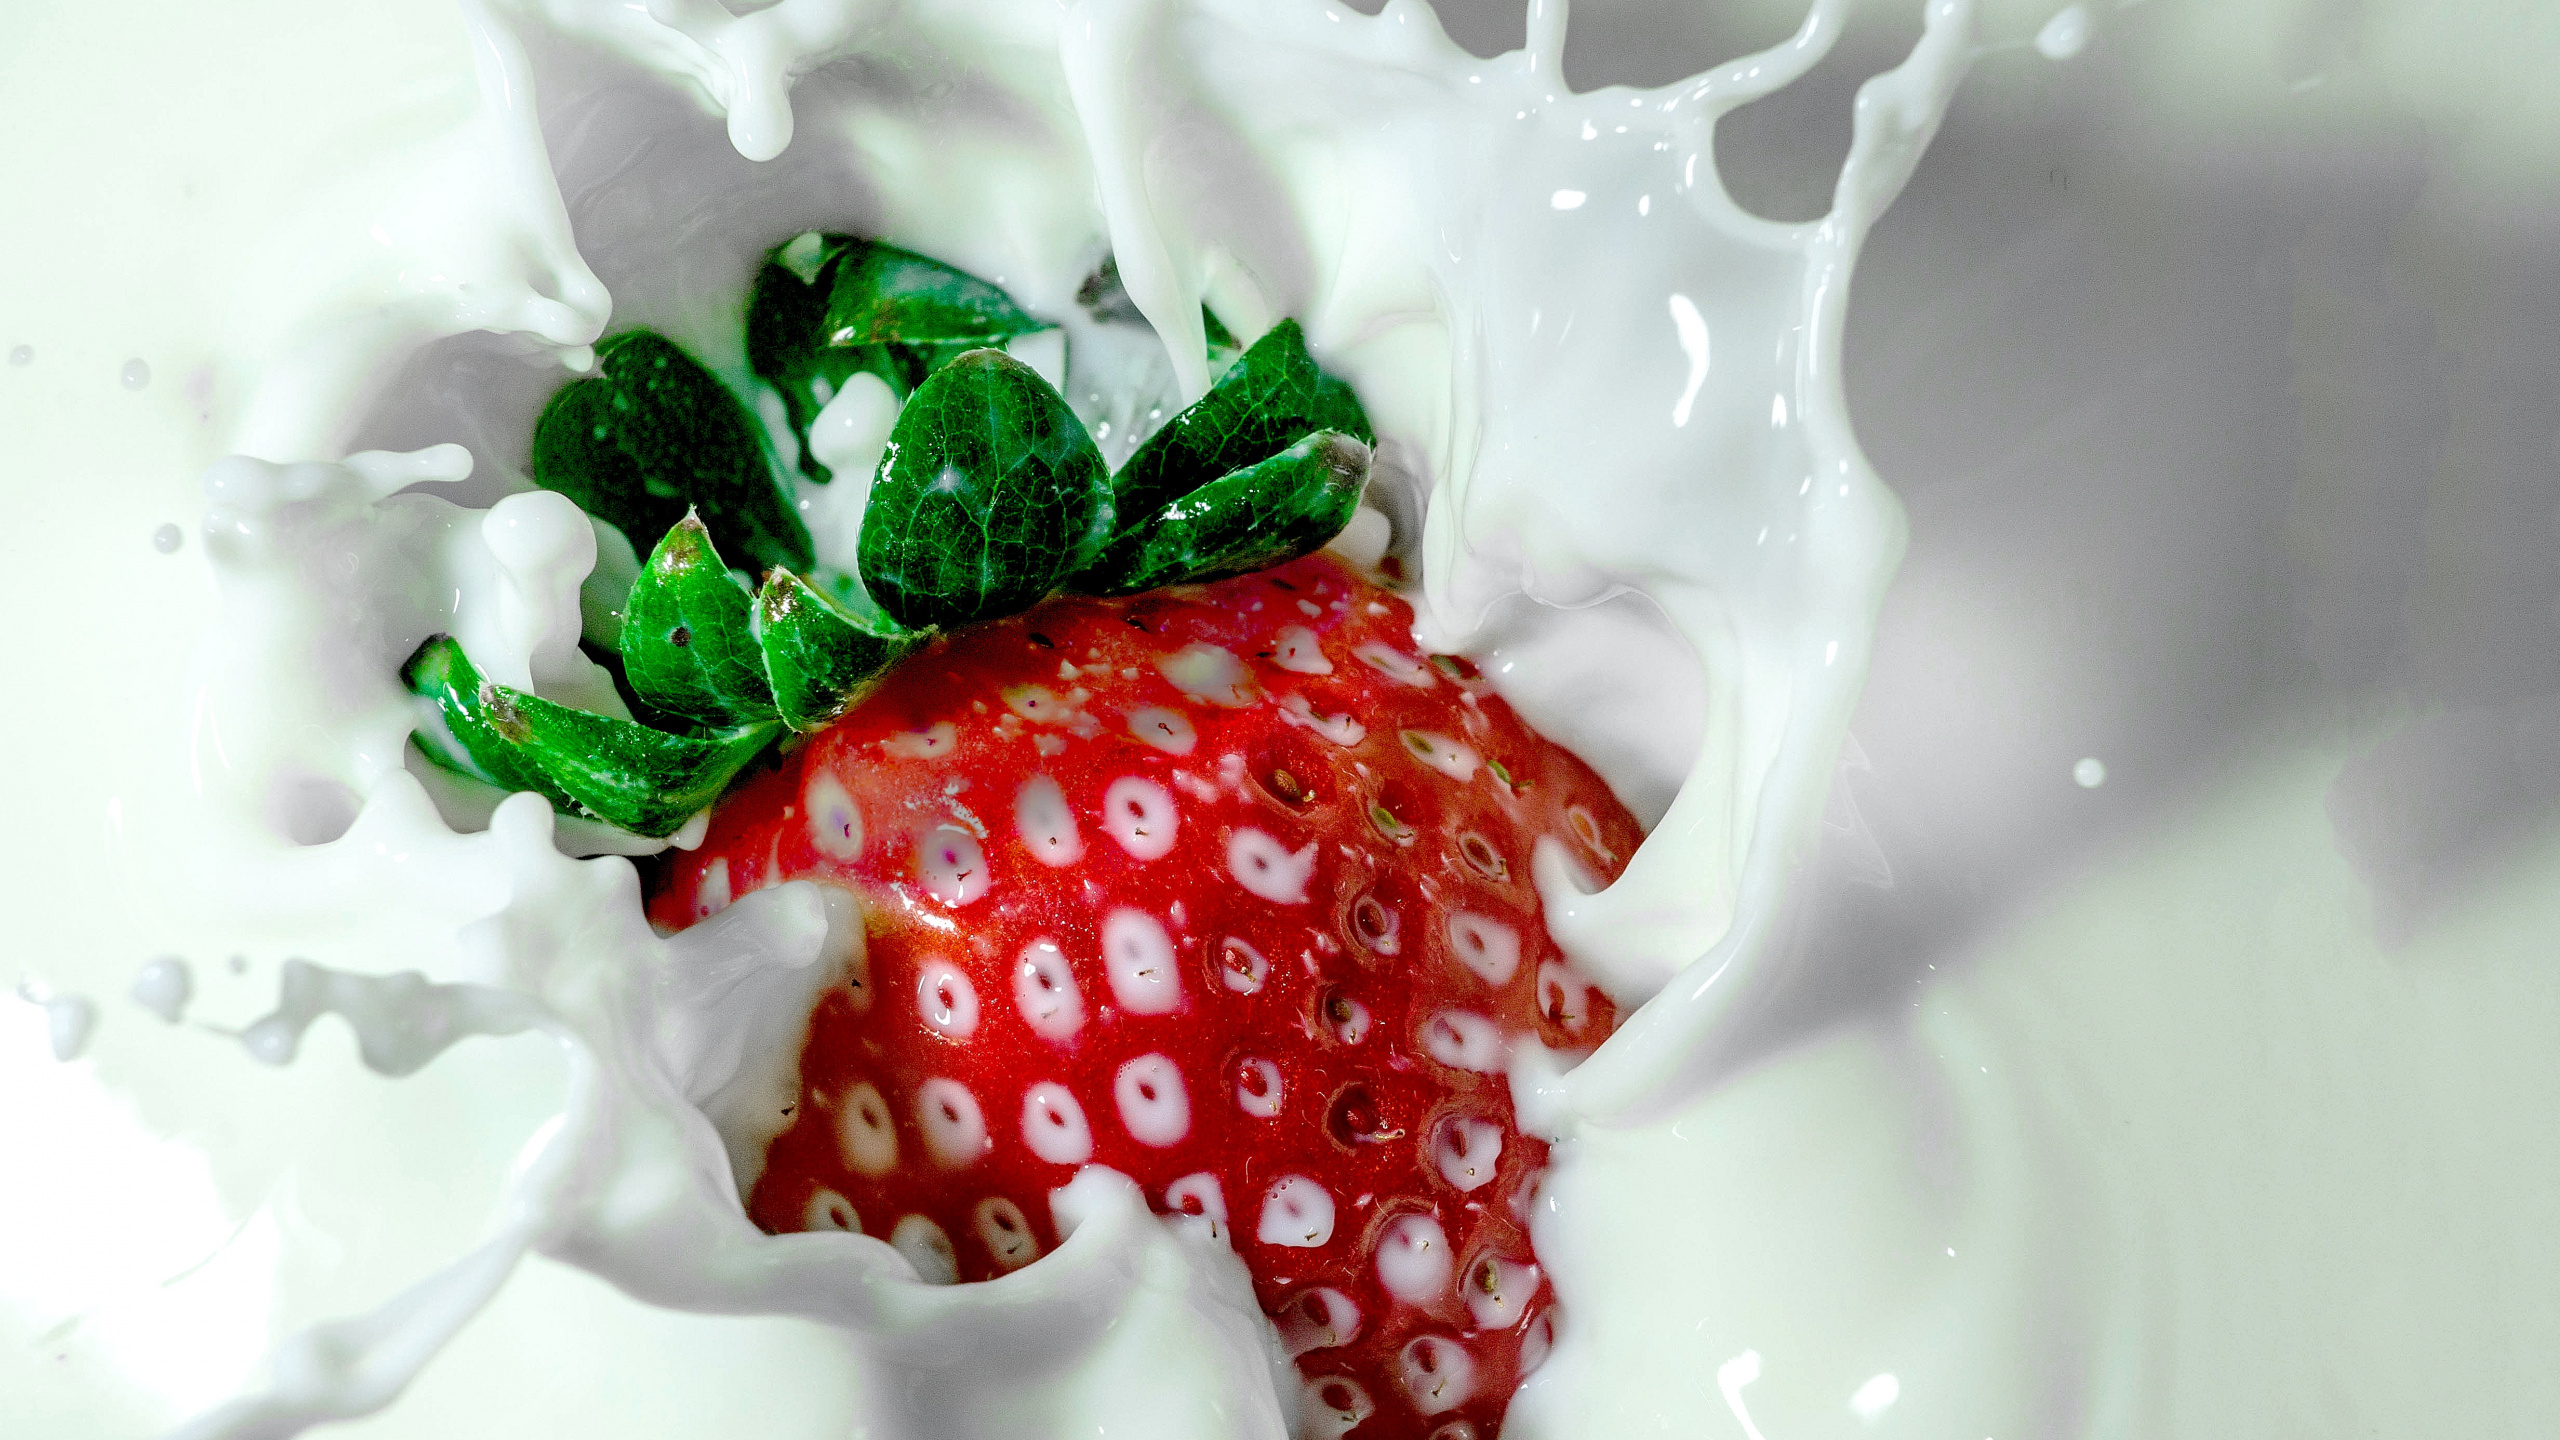 牛奶, 淇淋, 草莓, 红色的, 食品 壁纸 2560x1440 允许